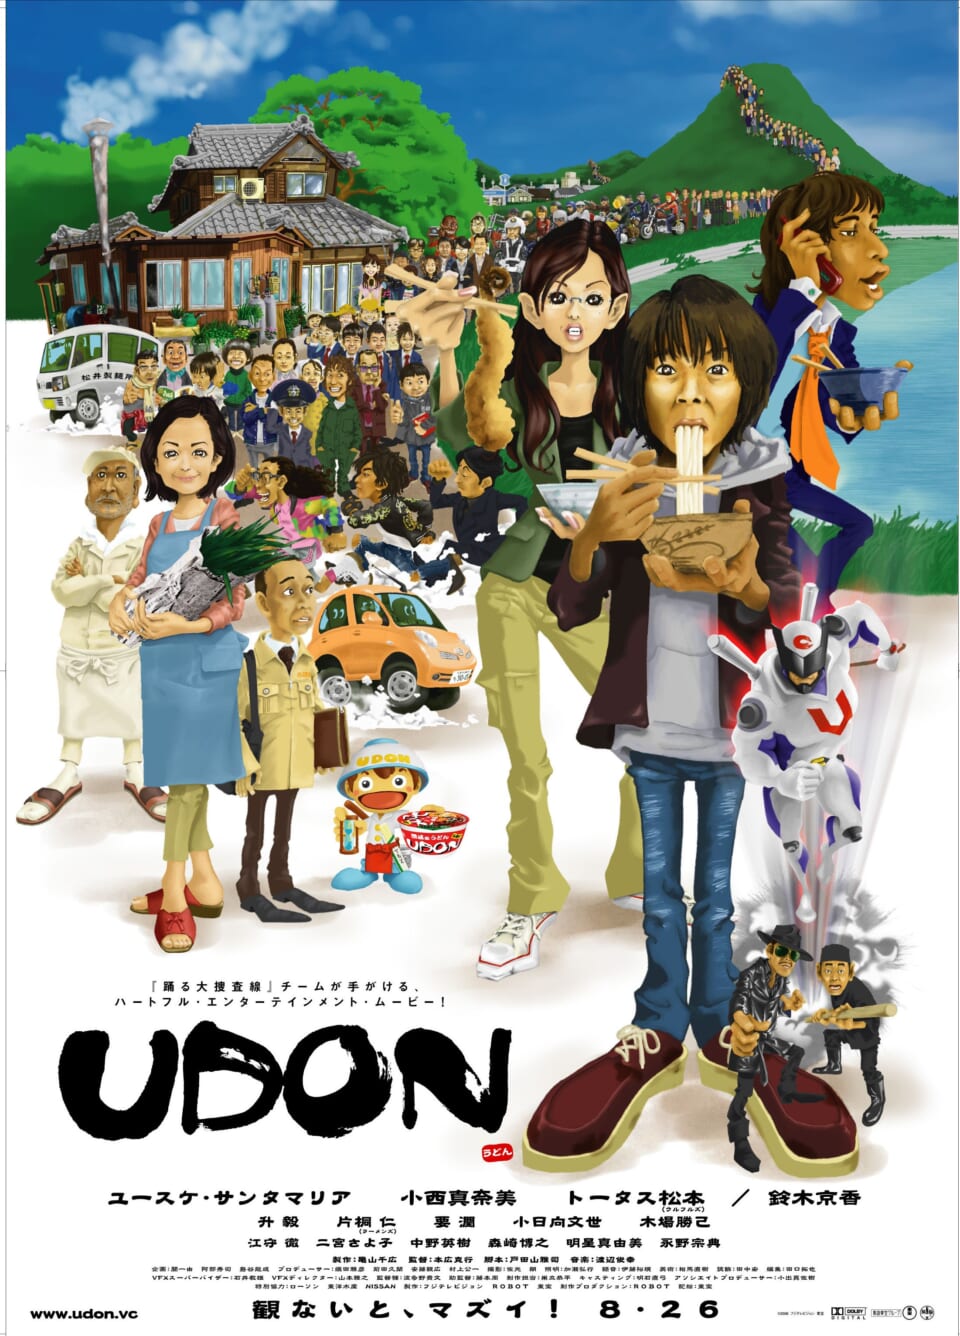 ※画像は映画『UDON』のポスターです。